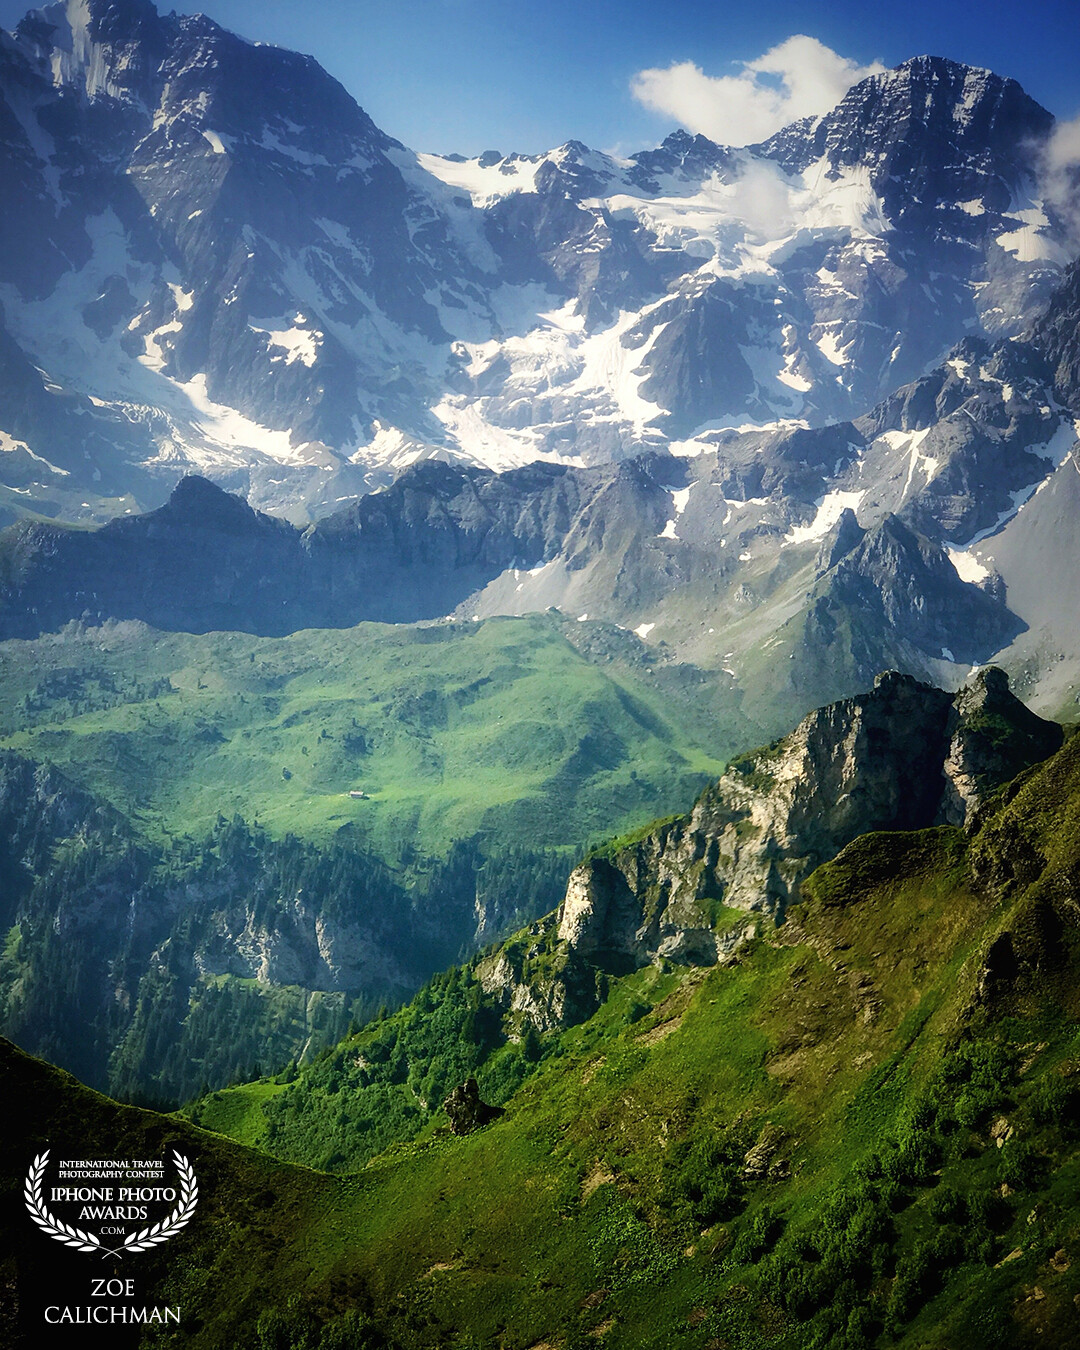 Mürren in Swiss Alps. Absolutely stunning landscape.